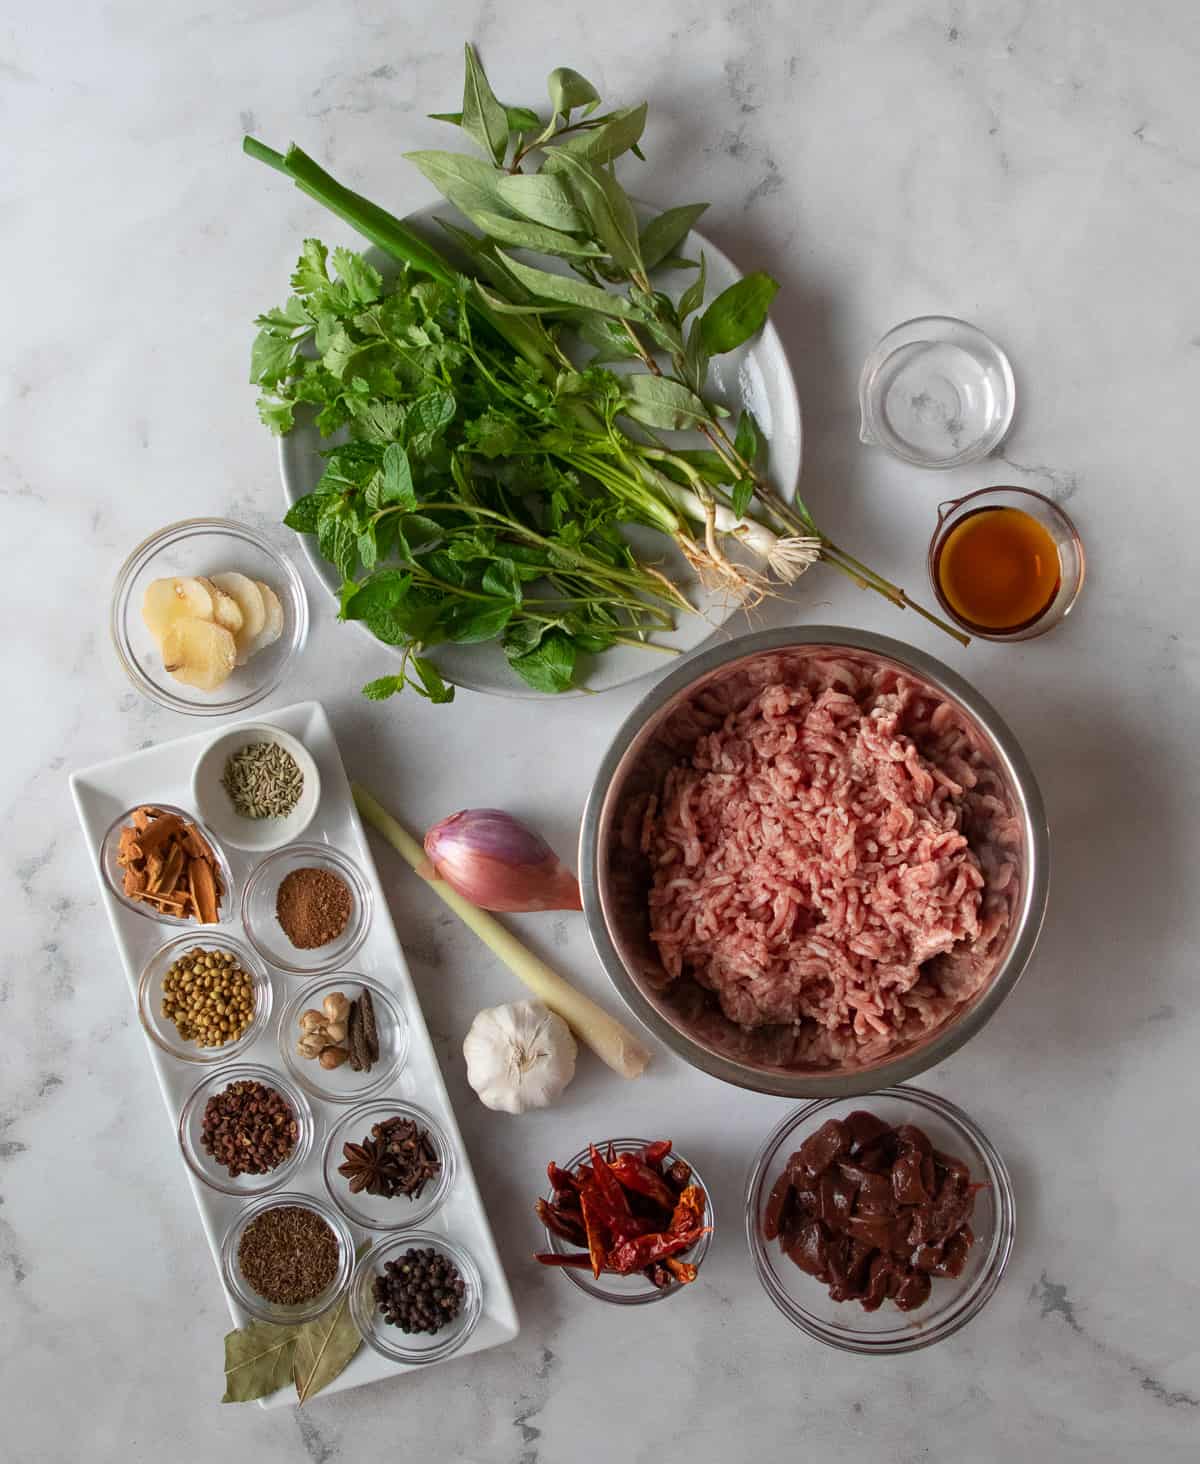 ingredients for laab kua
